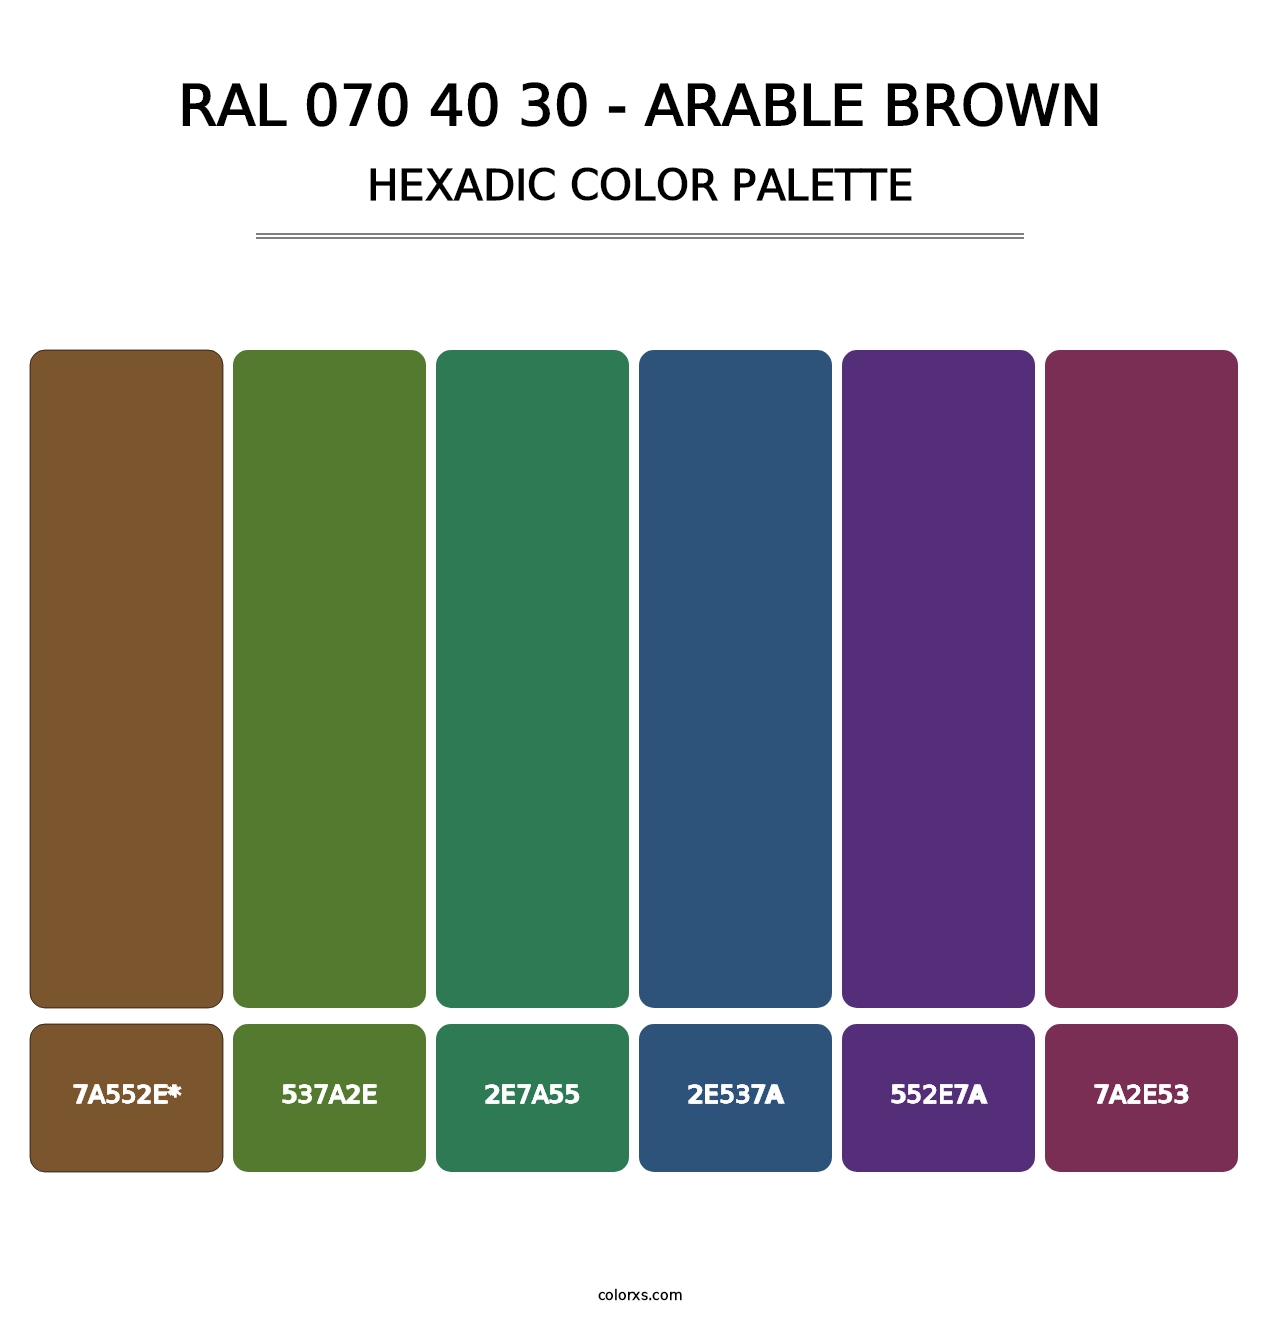 RAL 070 40 30 - Arable Brown - Hexadic Color Palette